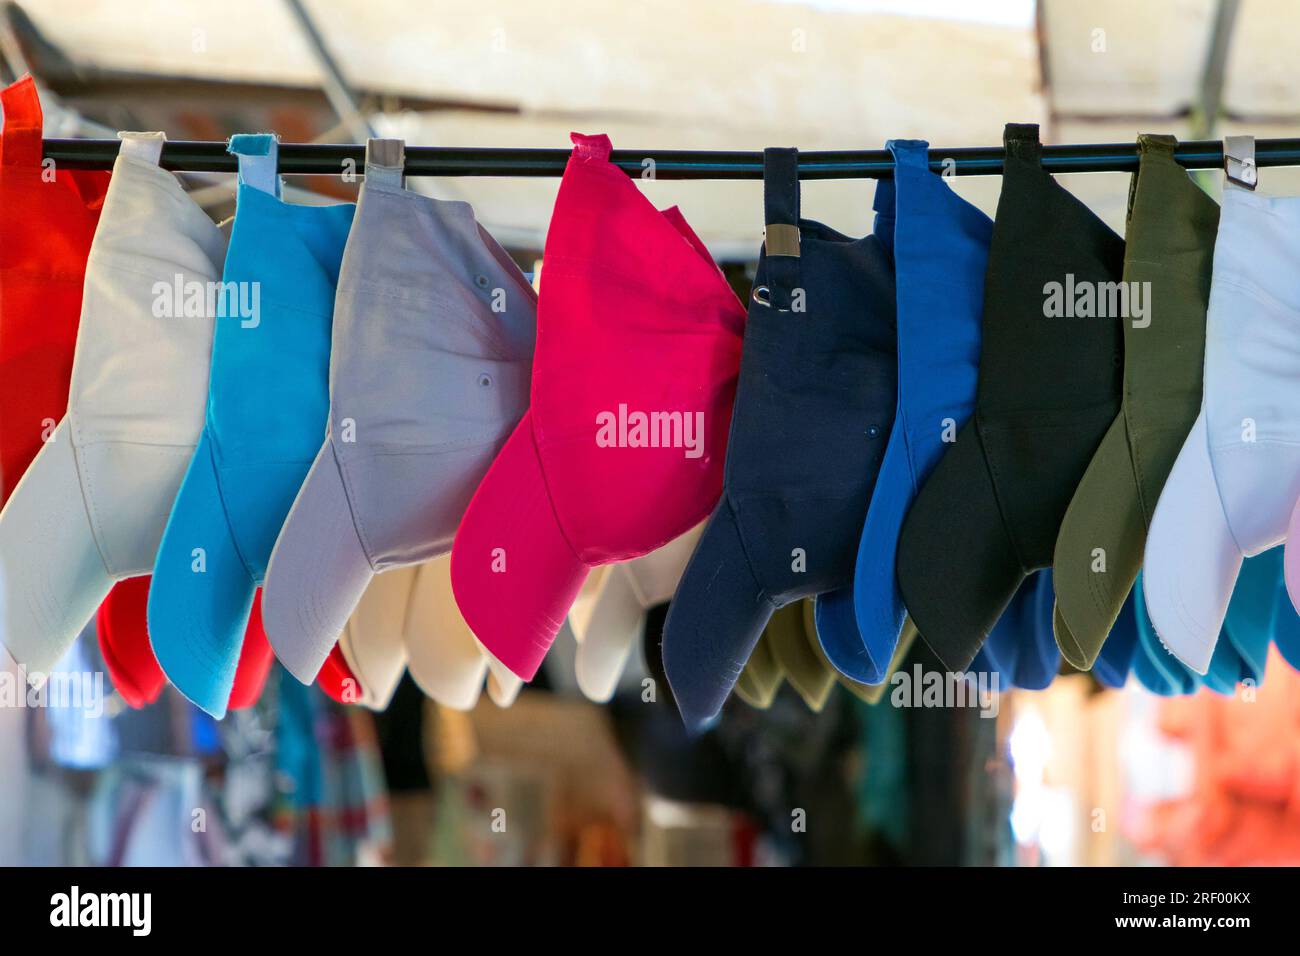 Berretti sportivi colorati a bordo piatto venduti all'esterno su un mercato Foto Stock